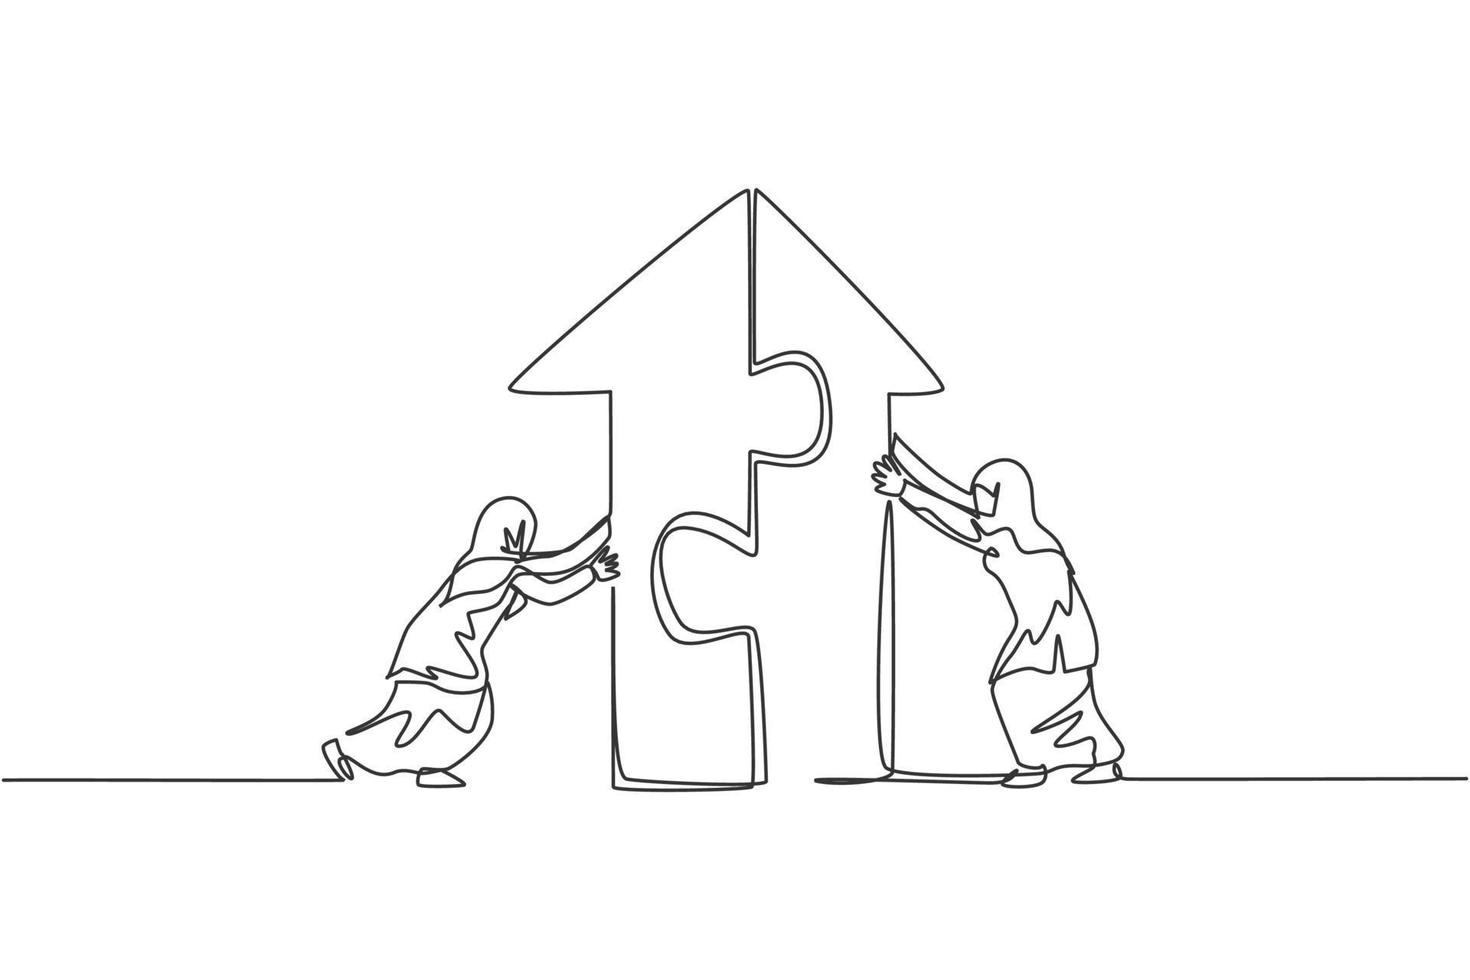 Kontinuierliche eine Linie, die zwei junge arabische Arbeiterinnen zeichnet, die Puzzle schieben, um Pfeilgebäude zu vereinen. Erfolg Teamwork minimalistisches Konzept. trendige Single-Line-Draw-Design-Vektorgrafik-Illustration vektor